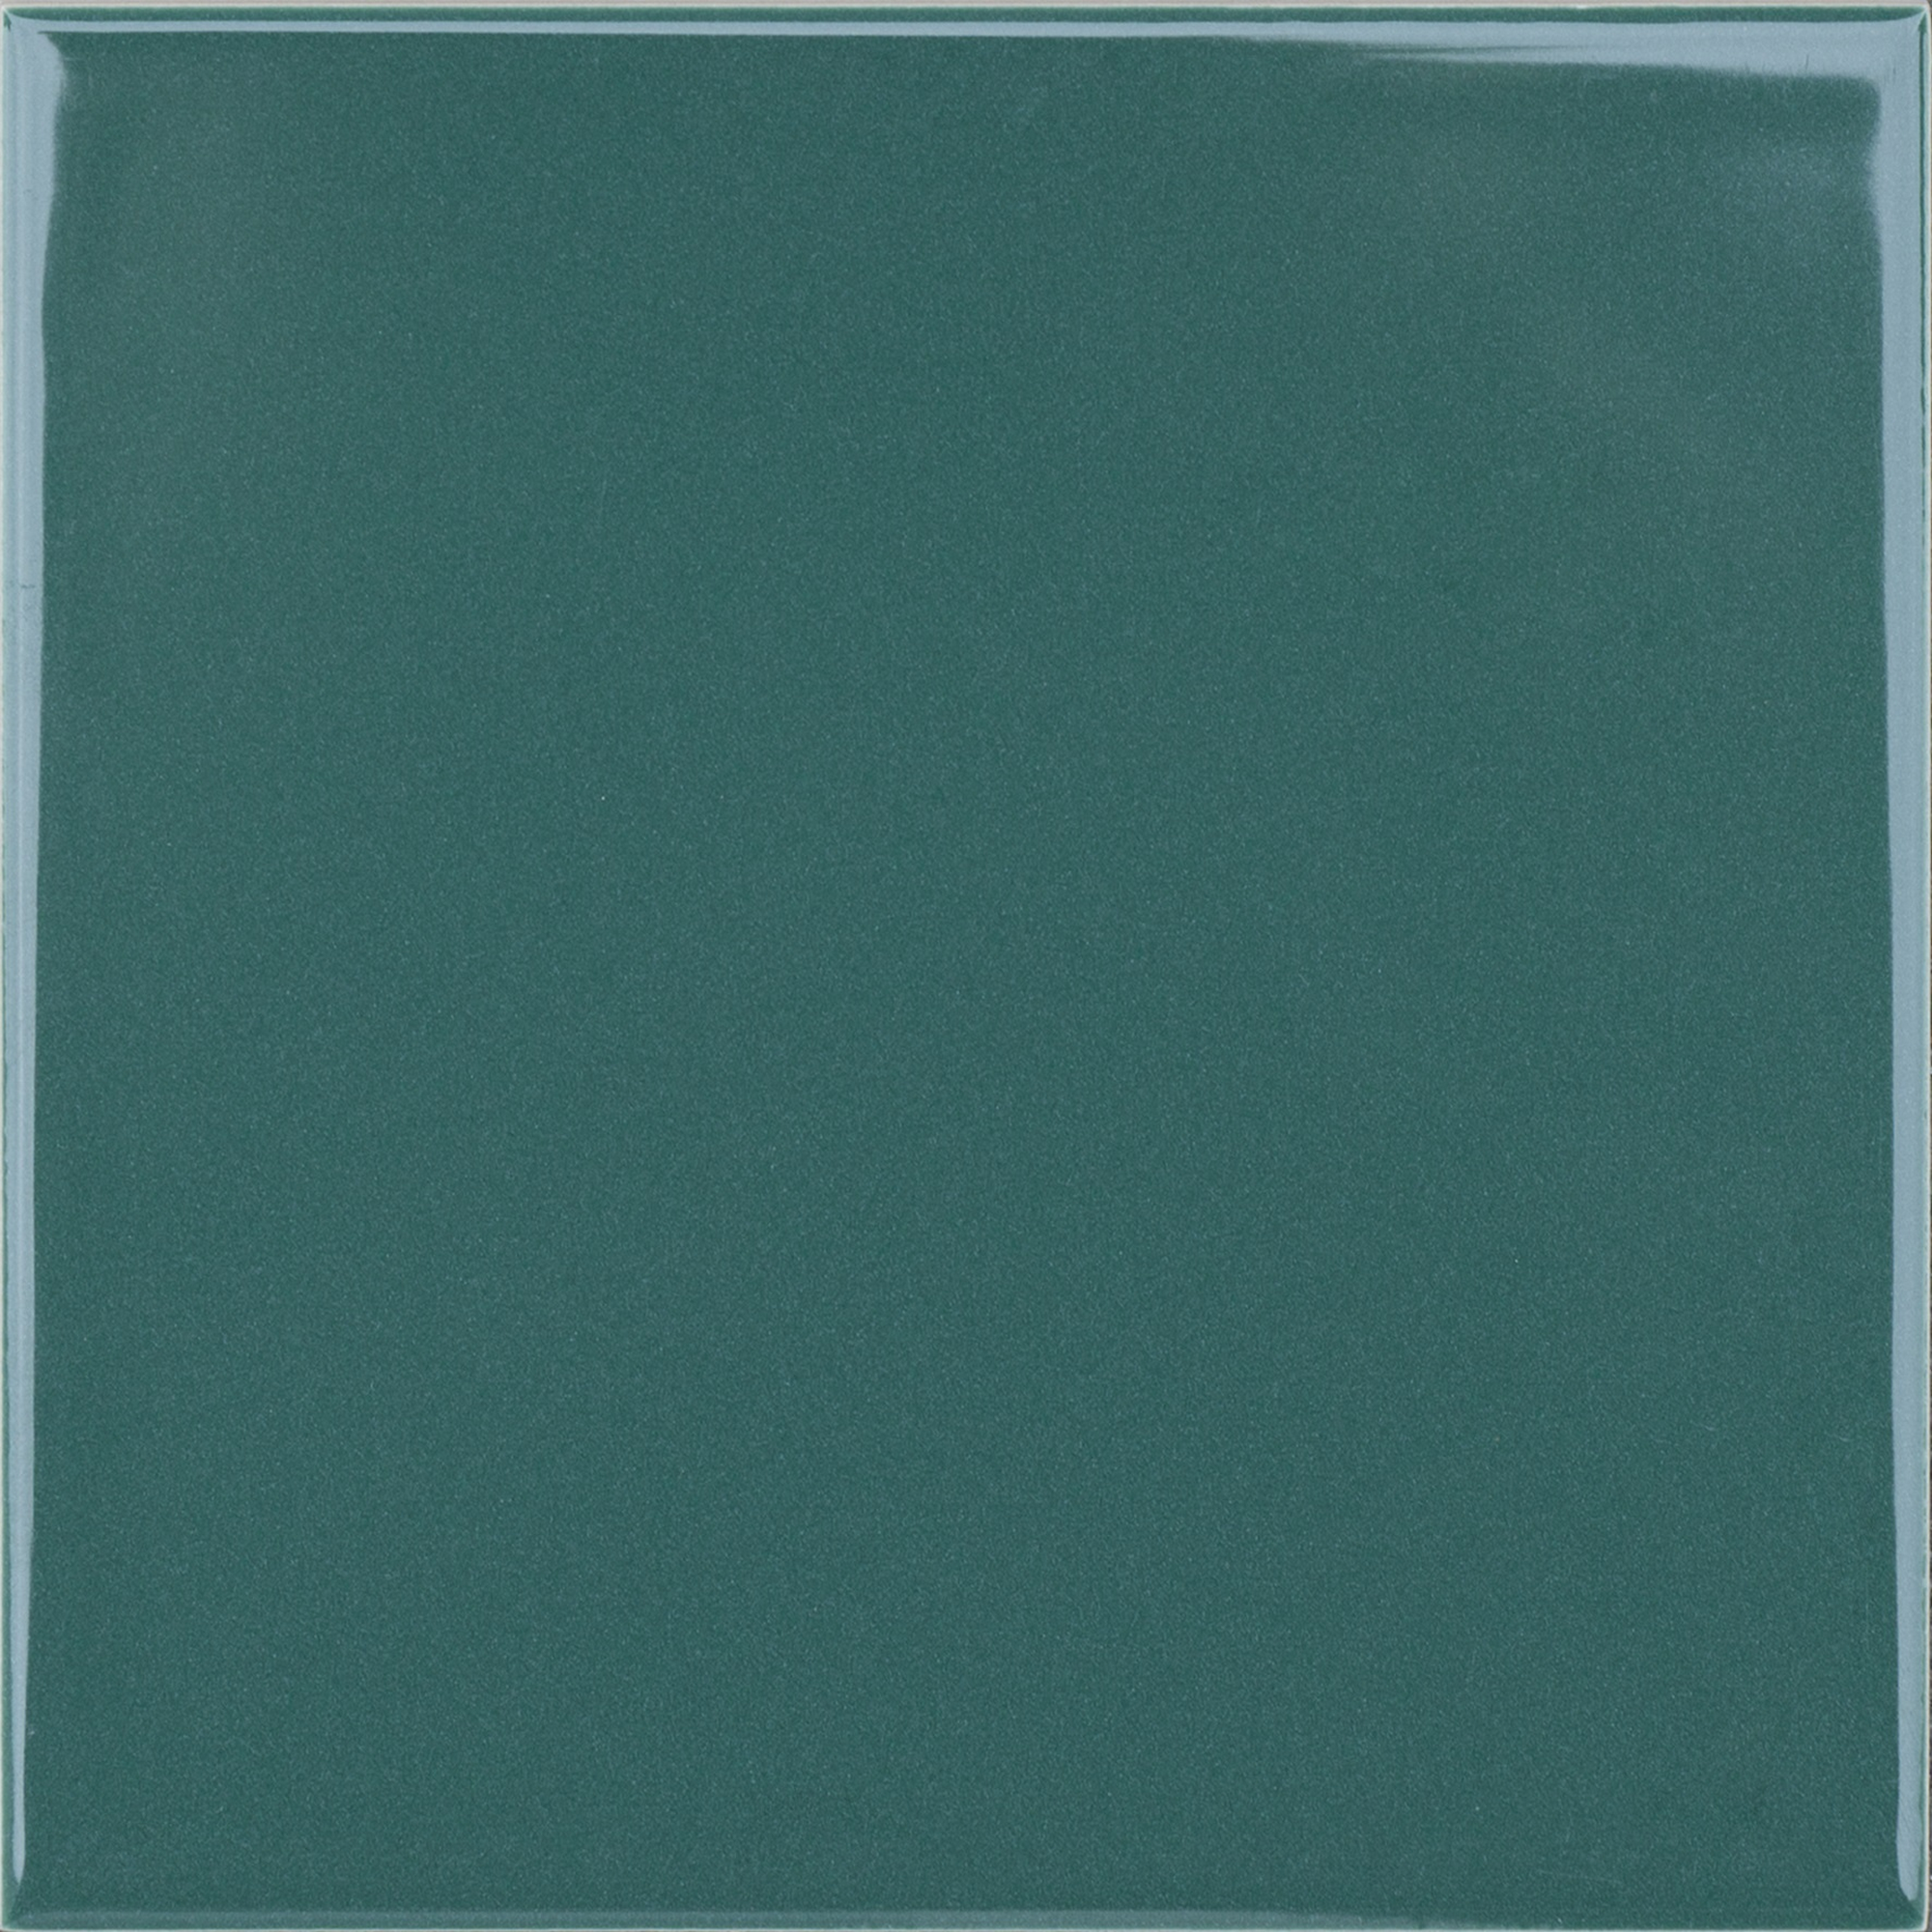 Wandfliese 'Jna' Steingut grün 14,8 x 14,8 cm + product picture